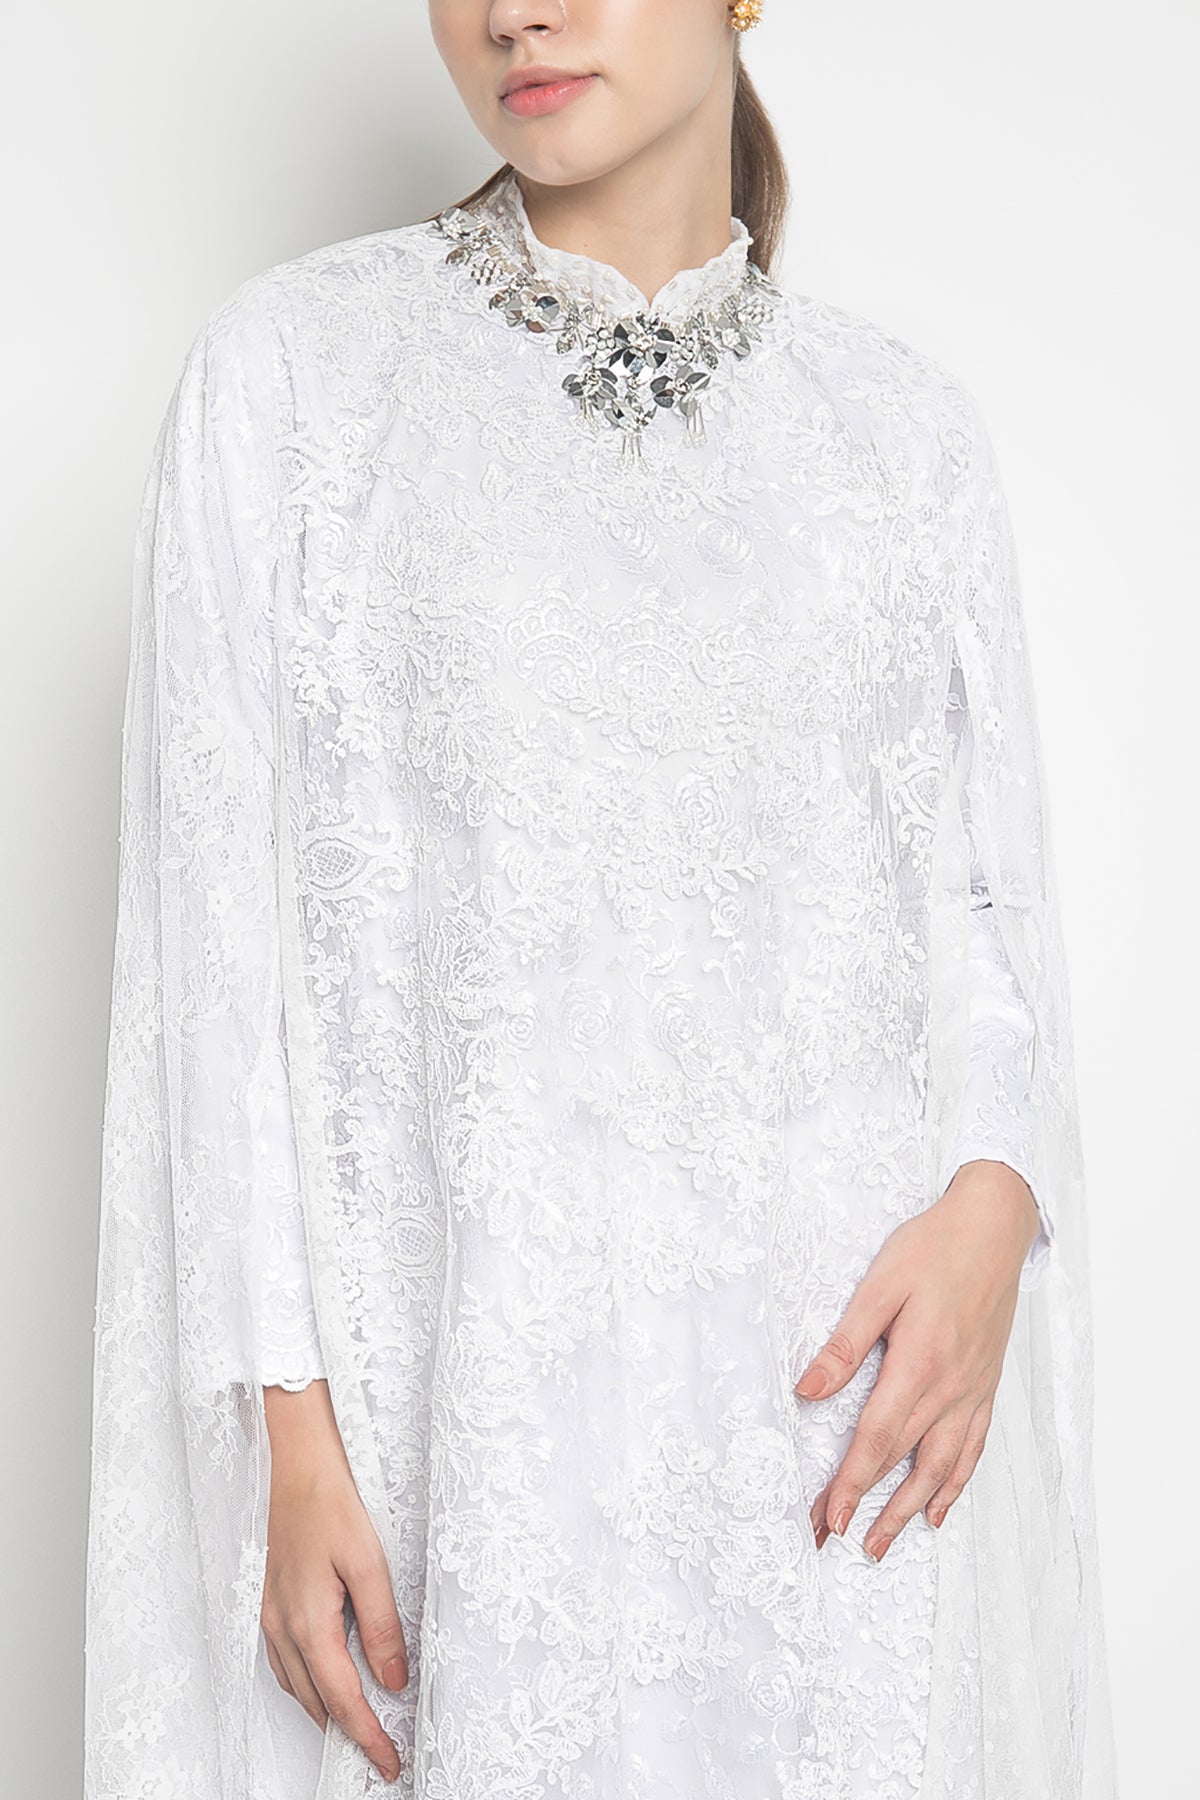 Sabhira Dress in White